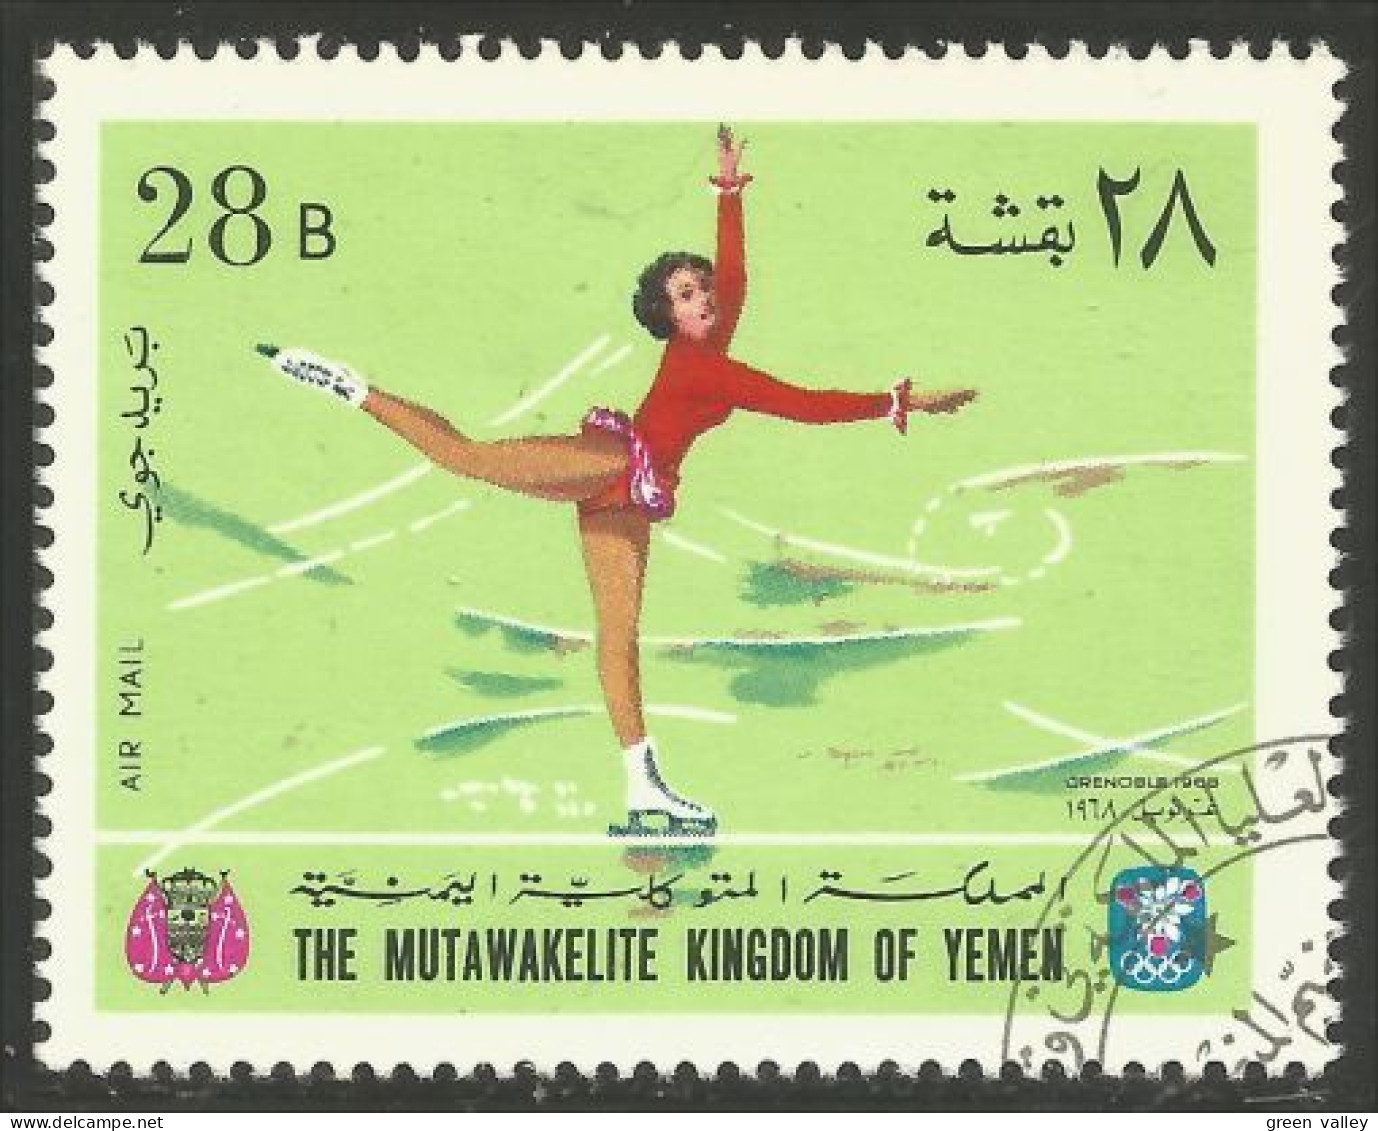 XW01-1618 Yemen Patinage Artistique Figure Skating Olympiques Grenoble Olympics - Patinage Artistique